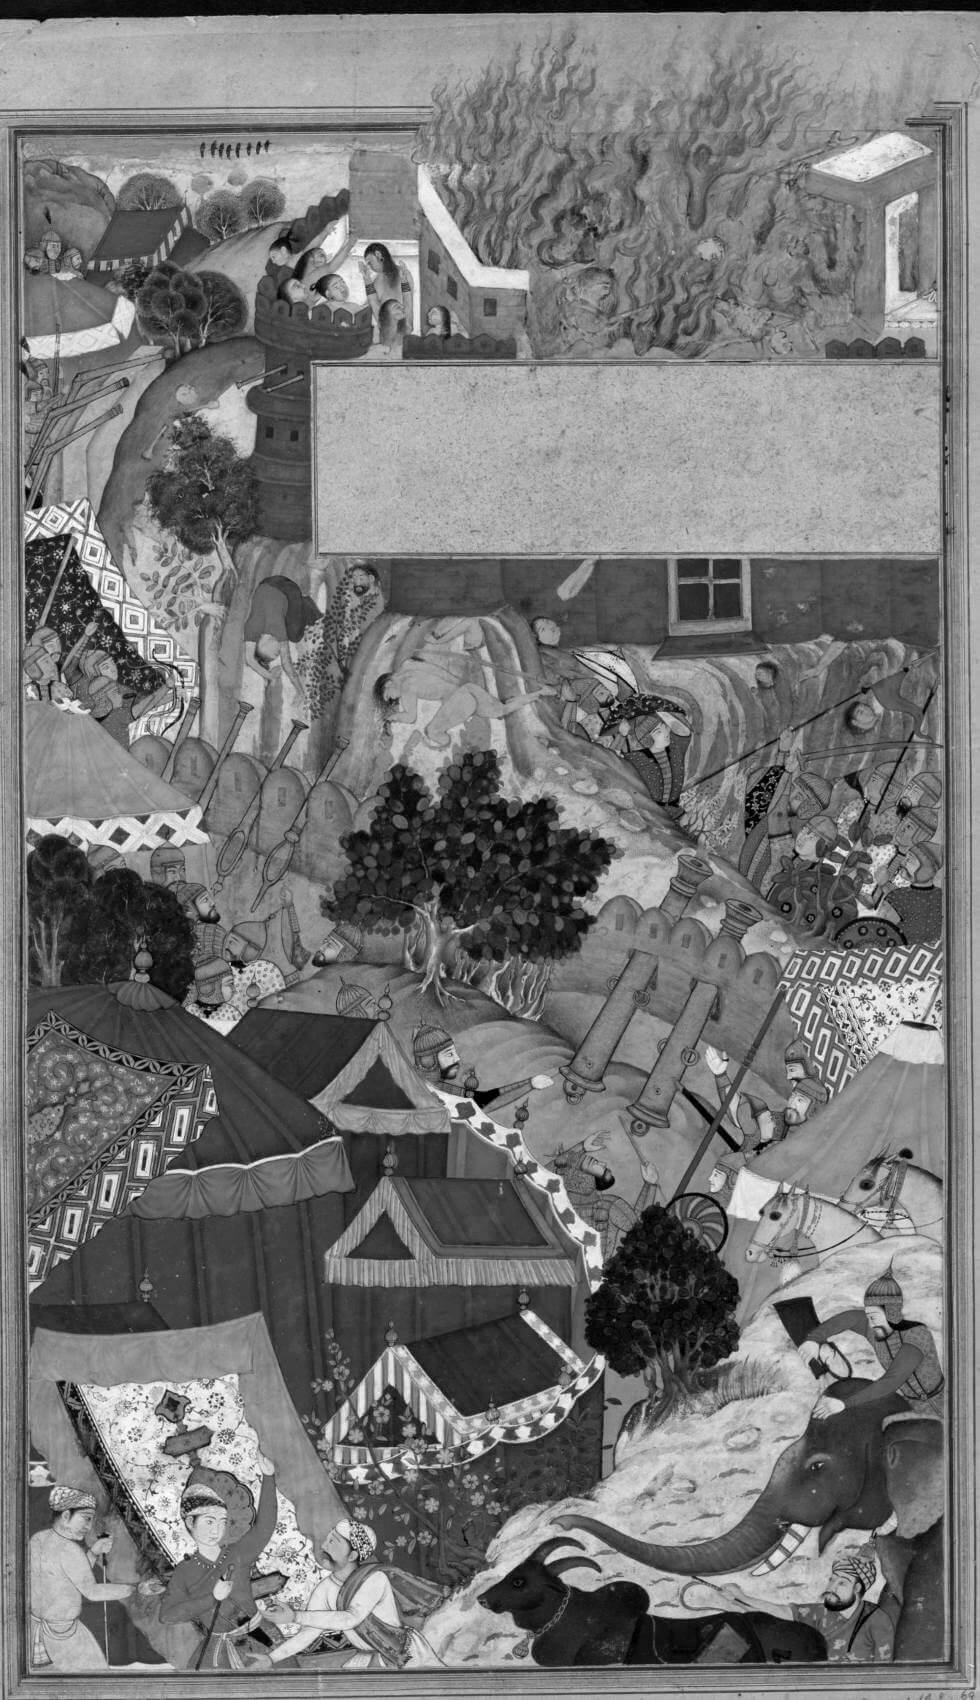 Padmavati and the siege of Chittorgarh